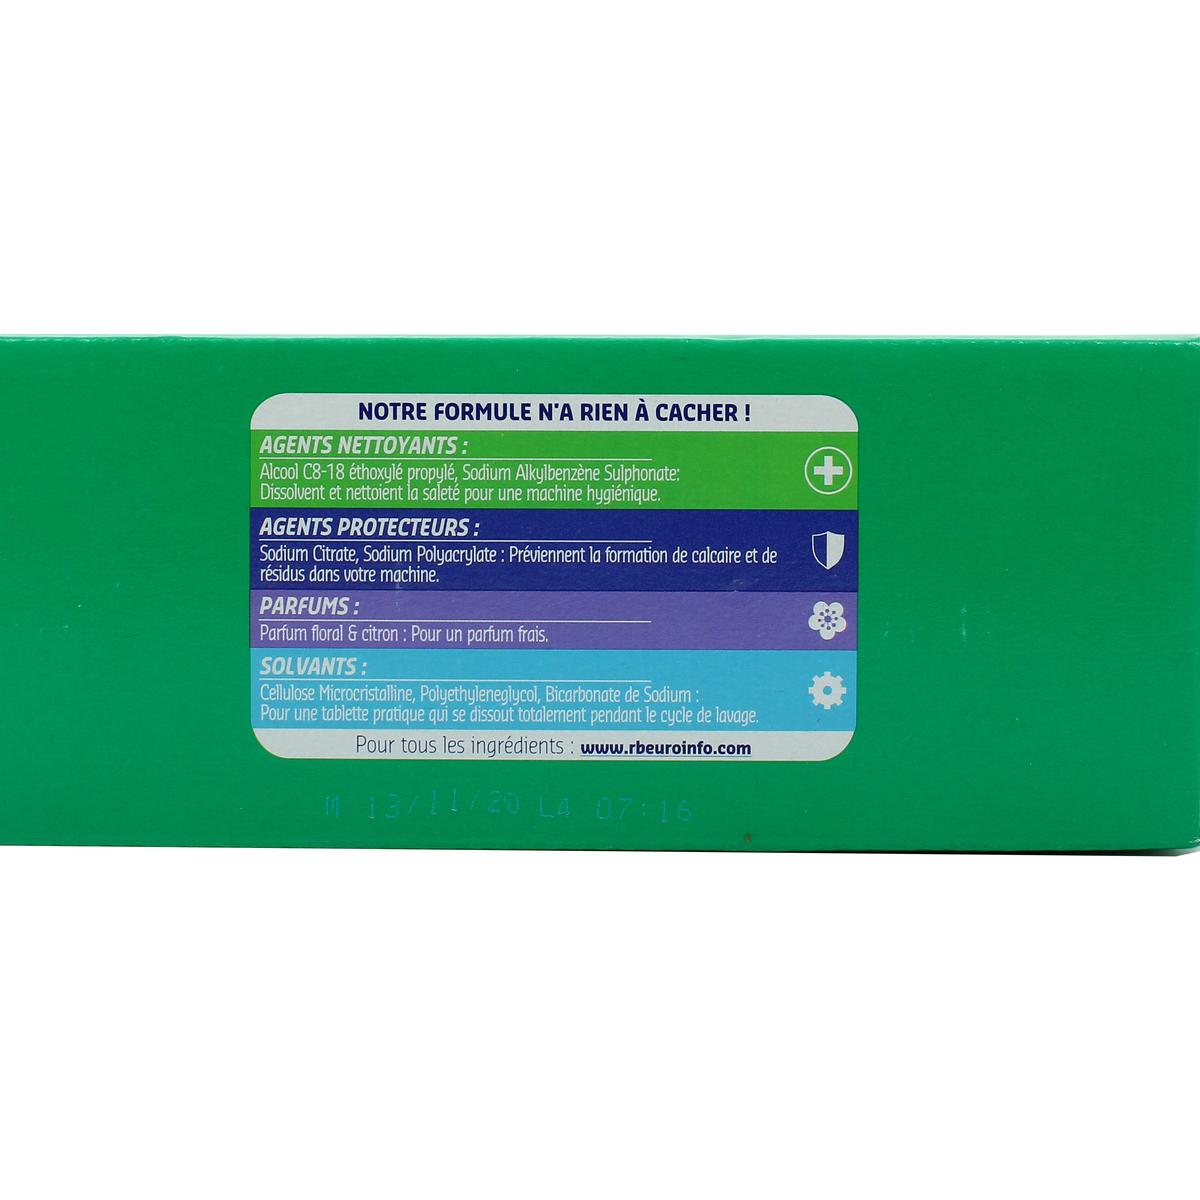 Calgon Anticalcaire 4 en 1 Comprimé, protège et maintient votre lave-linge  propre - Le paquet de 48 tablettes